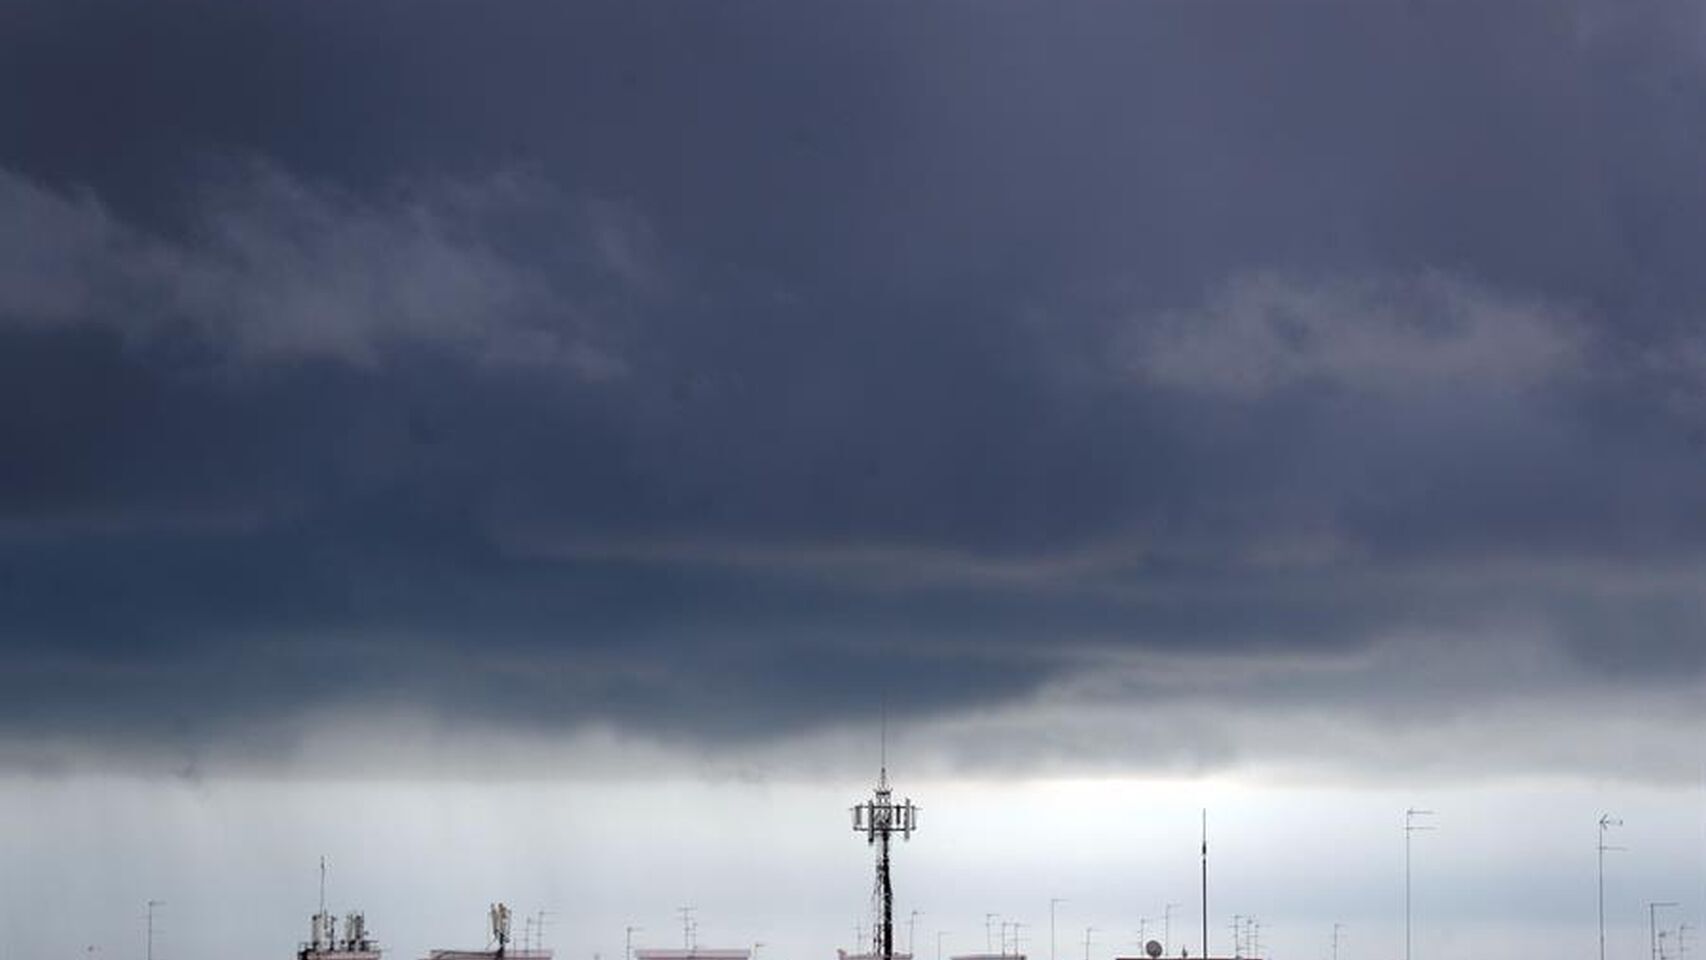 Vista general del frente de nubes sobre la población de Burjassot, Valencia.